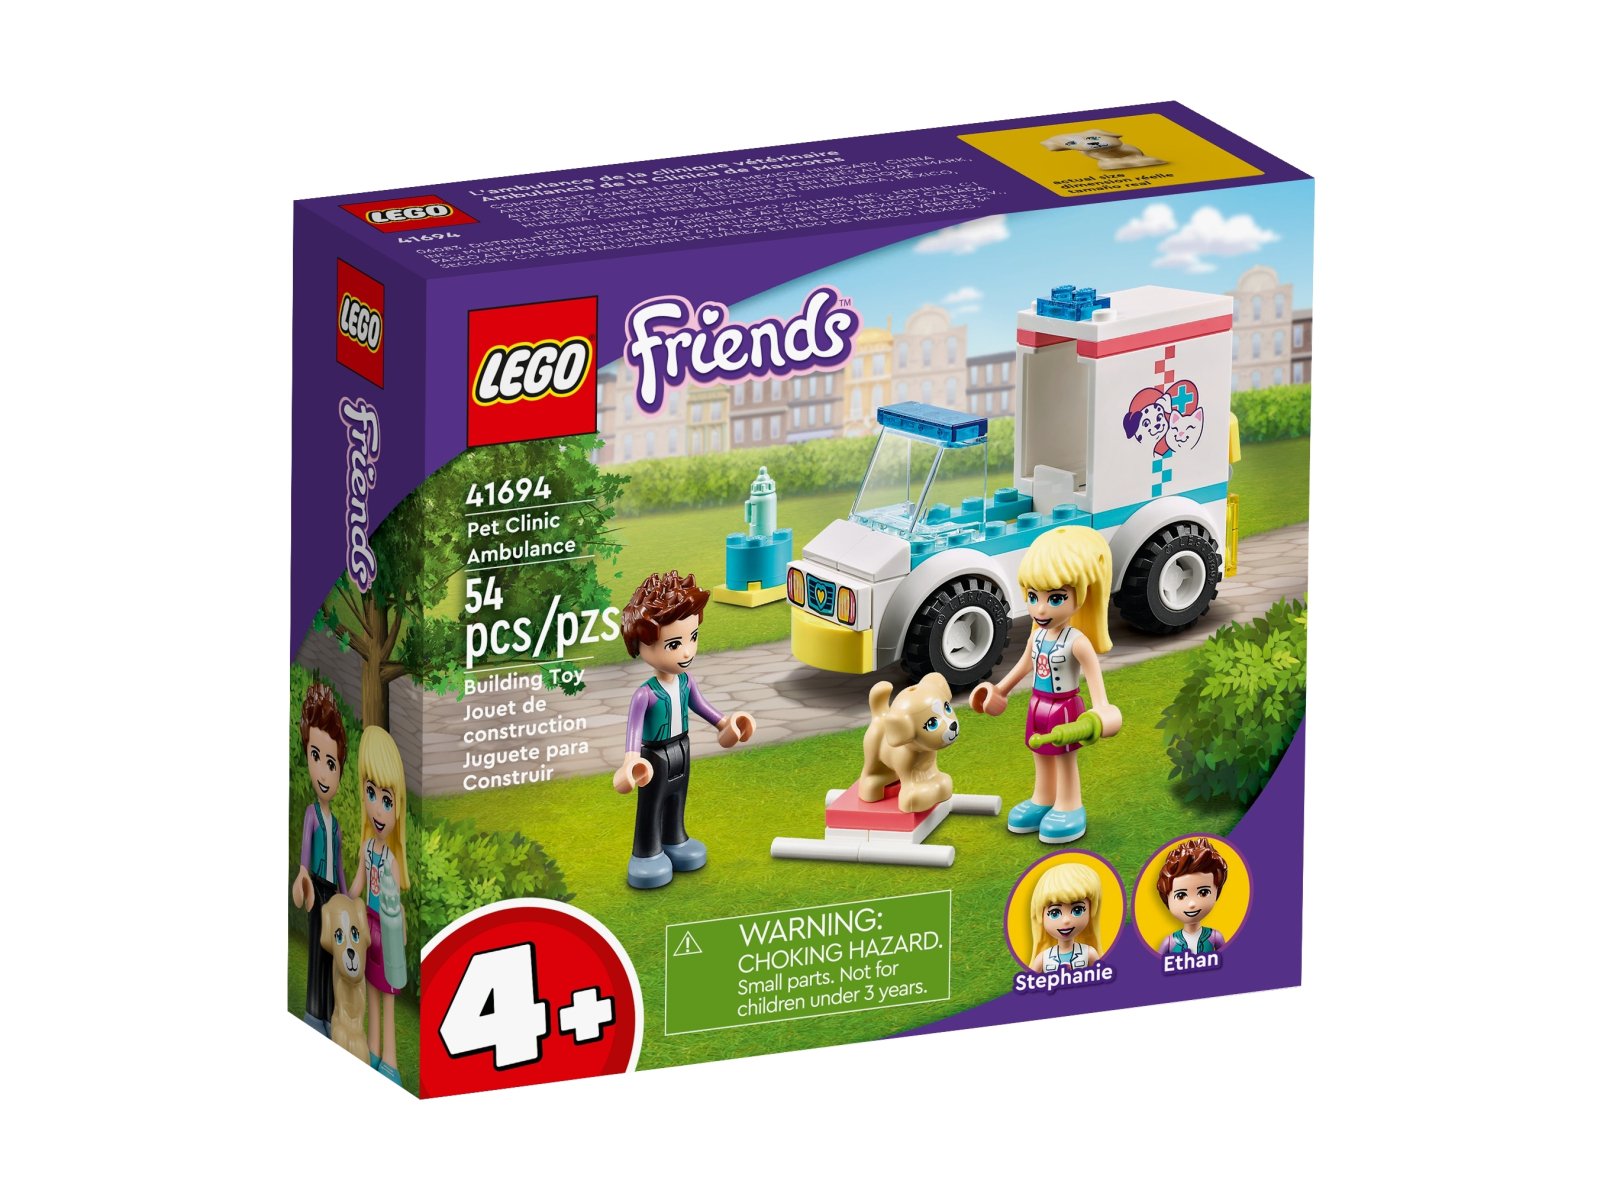 LEGO Friends 41694 Karetka kliniki dla zwierzątek